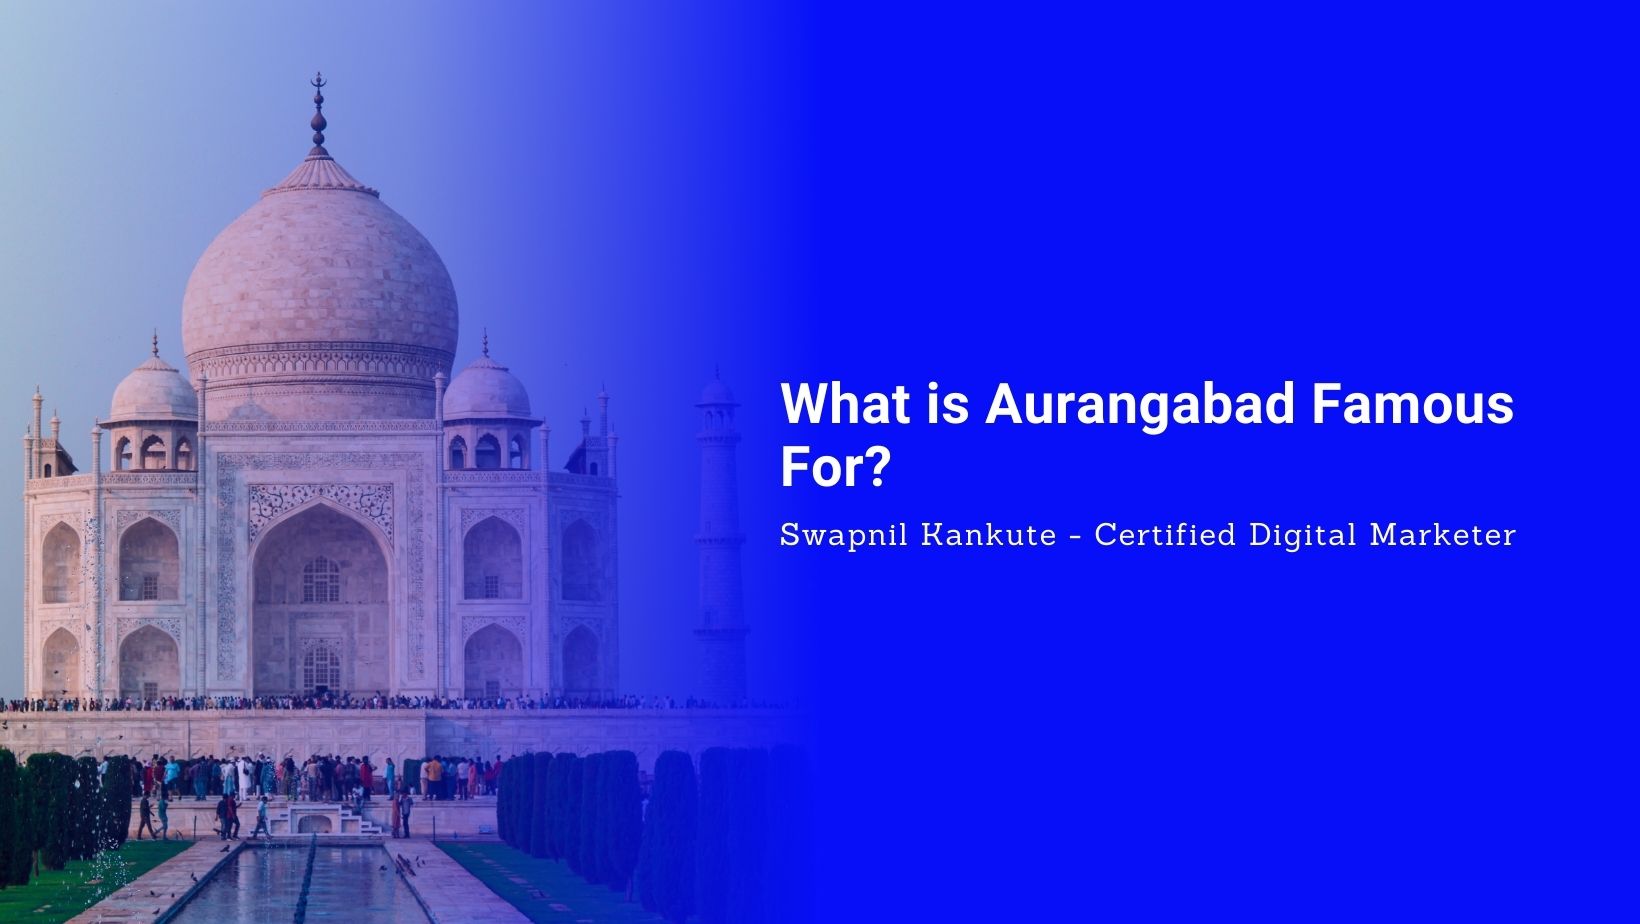 Aurangabad Famous